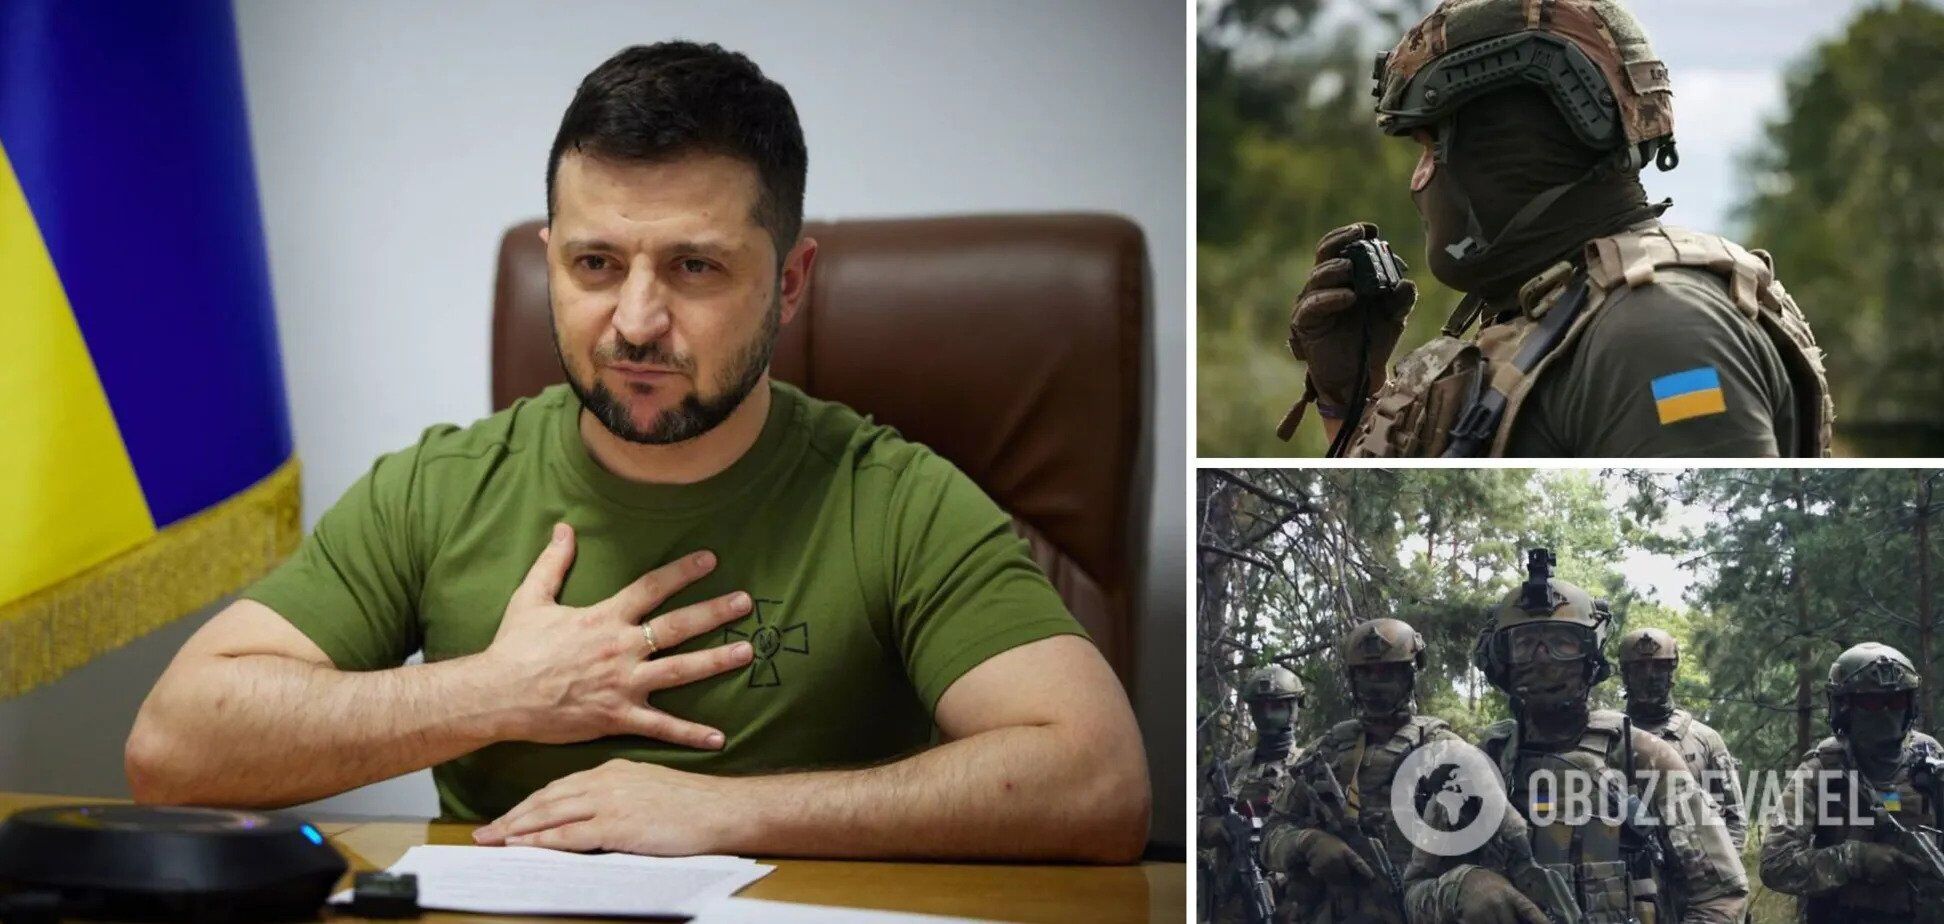 "За каждое завтра нужно бороться, нас ждет победа": Зеленский обратился к украинцам в годовщину полномасштабной войны. Видео